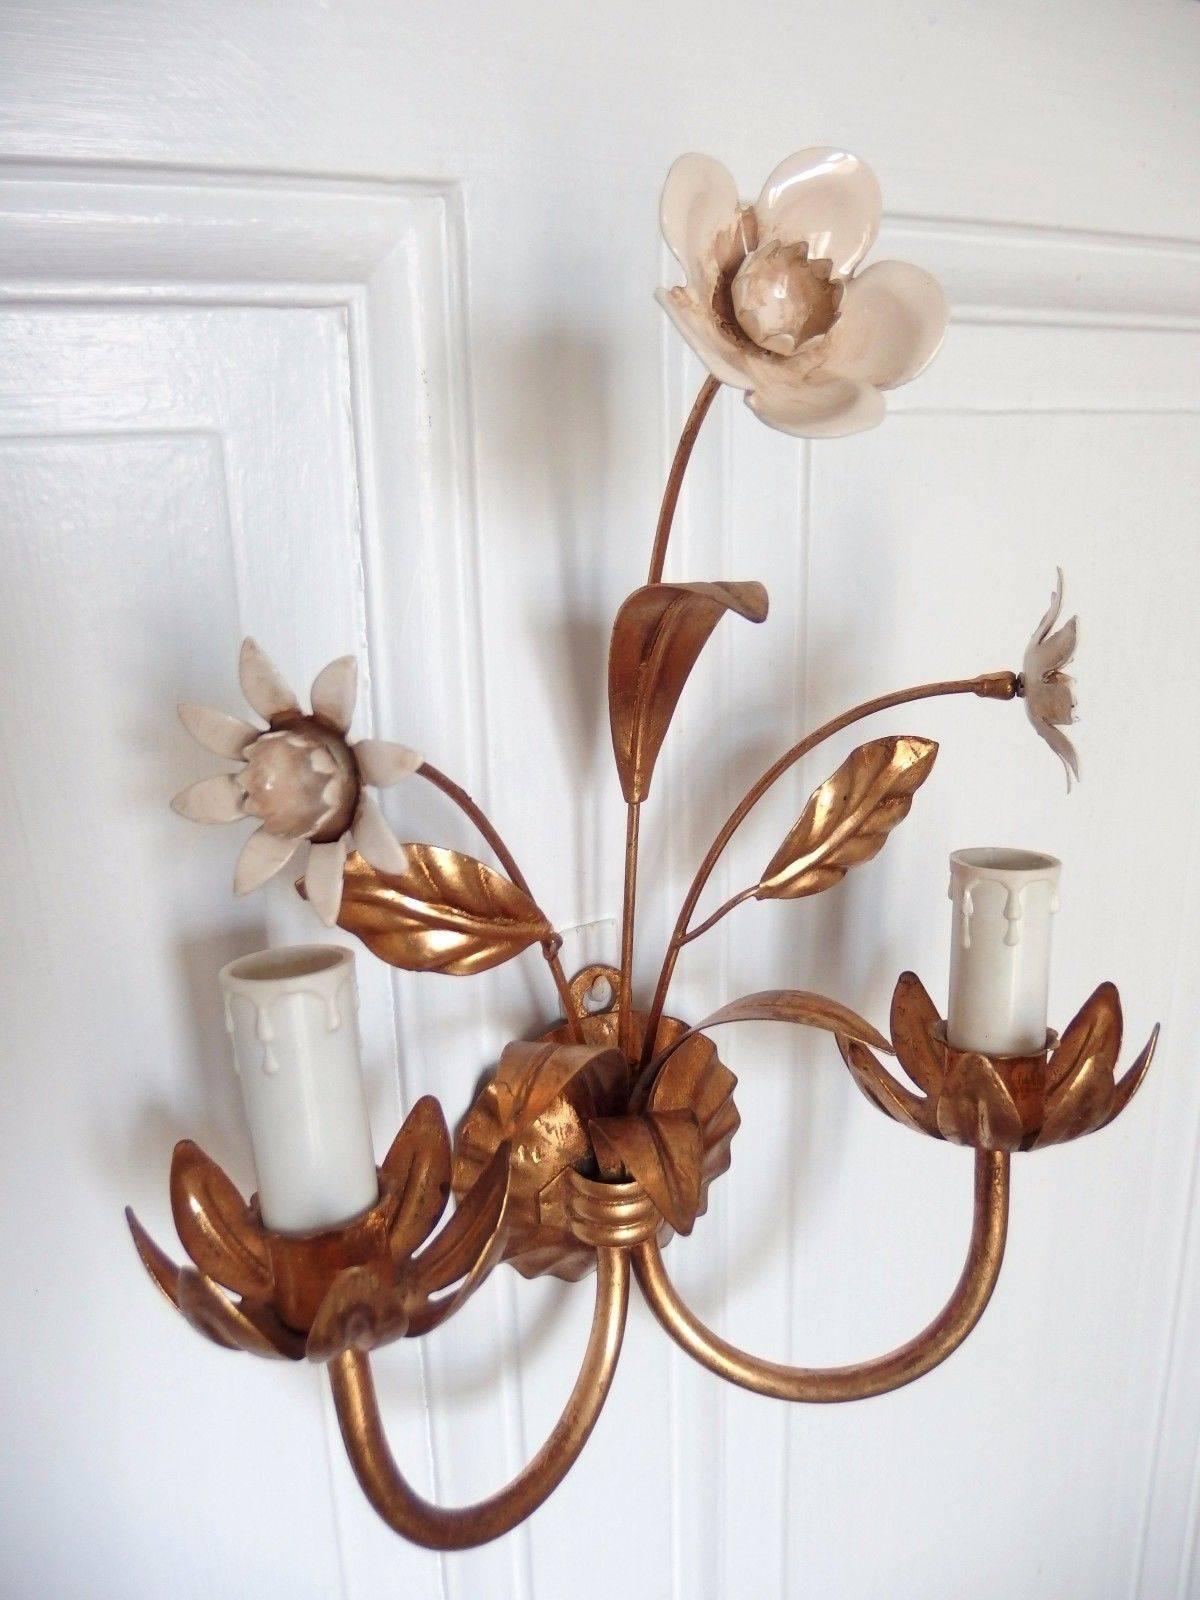 Applique avec deux douilles E14 représentant un bouquet de fleurs.
Structure dorée à la couleur du cuivre.
Belle patine.
Dans le style de la Maison Bagués, Paris

Mesures : Hauteur 33 cm.